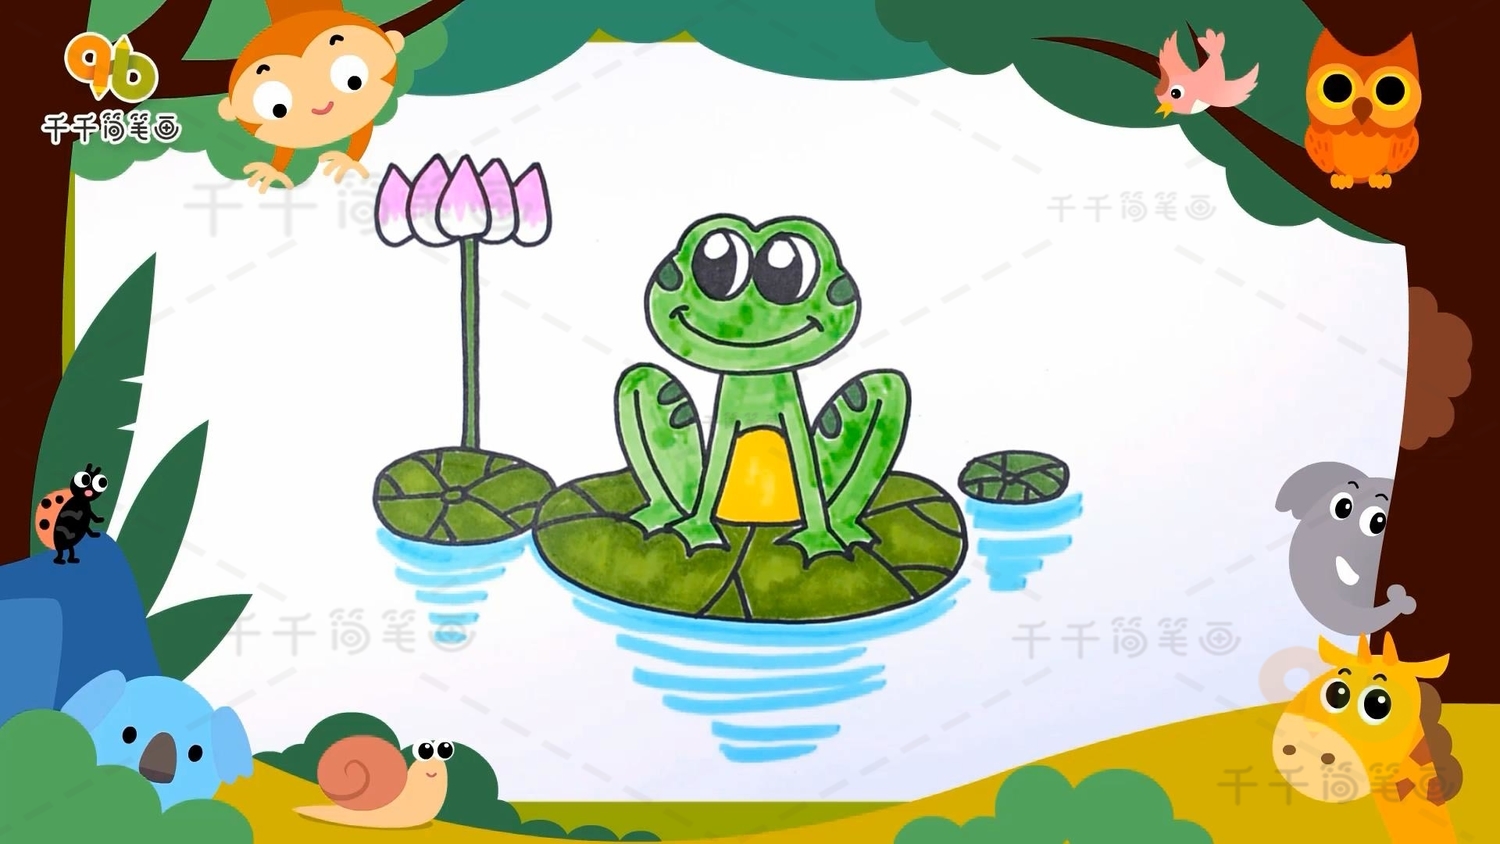 简笔画大全：小青蛙的绘图方法 看完你就知道了 - 天晴经验网